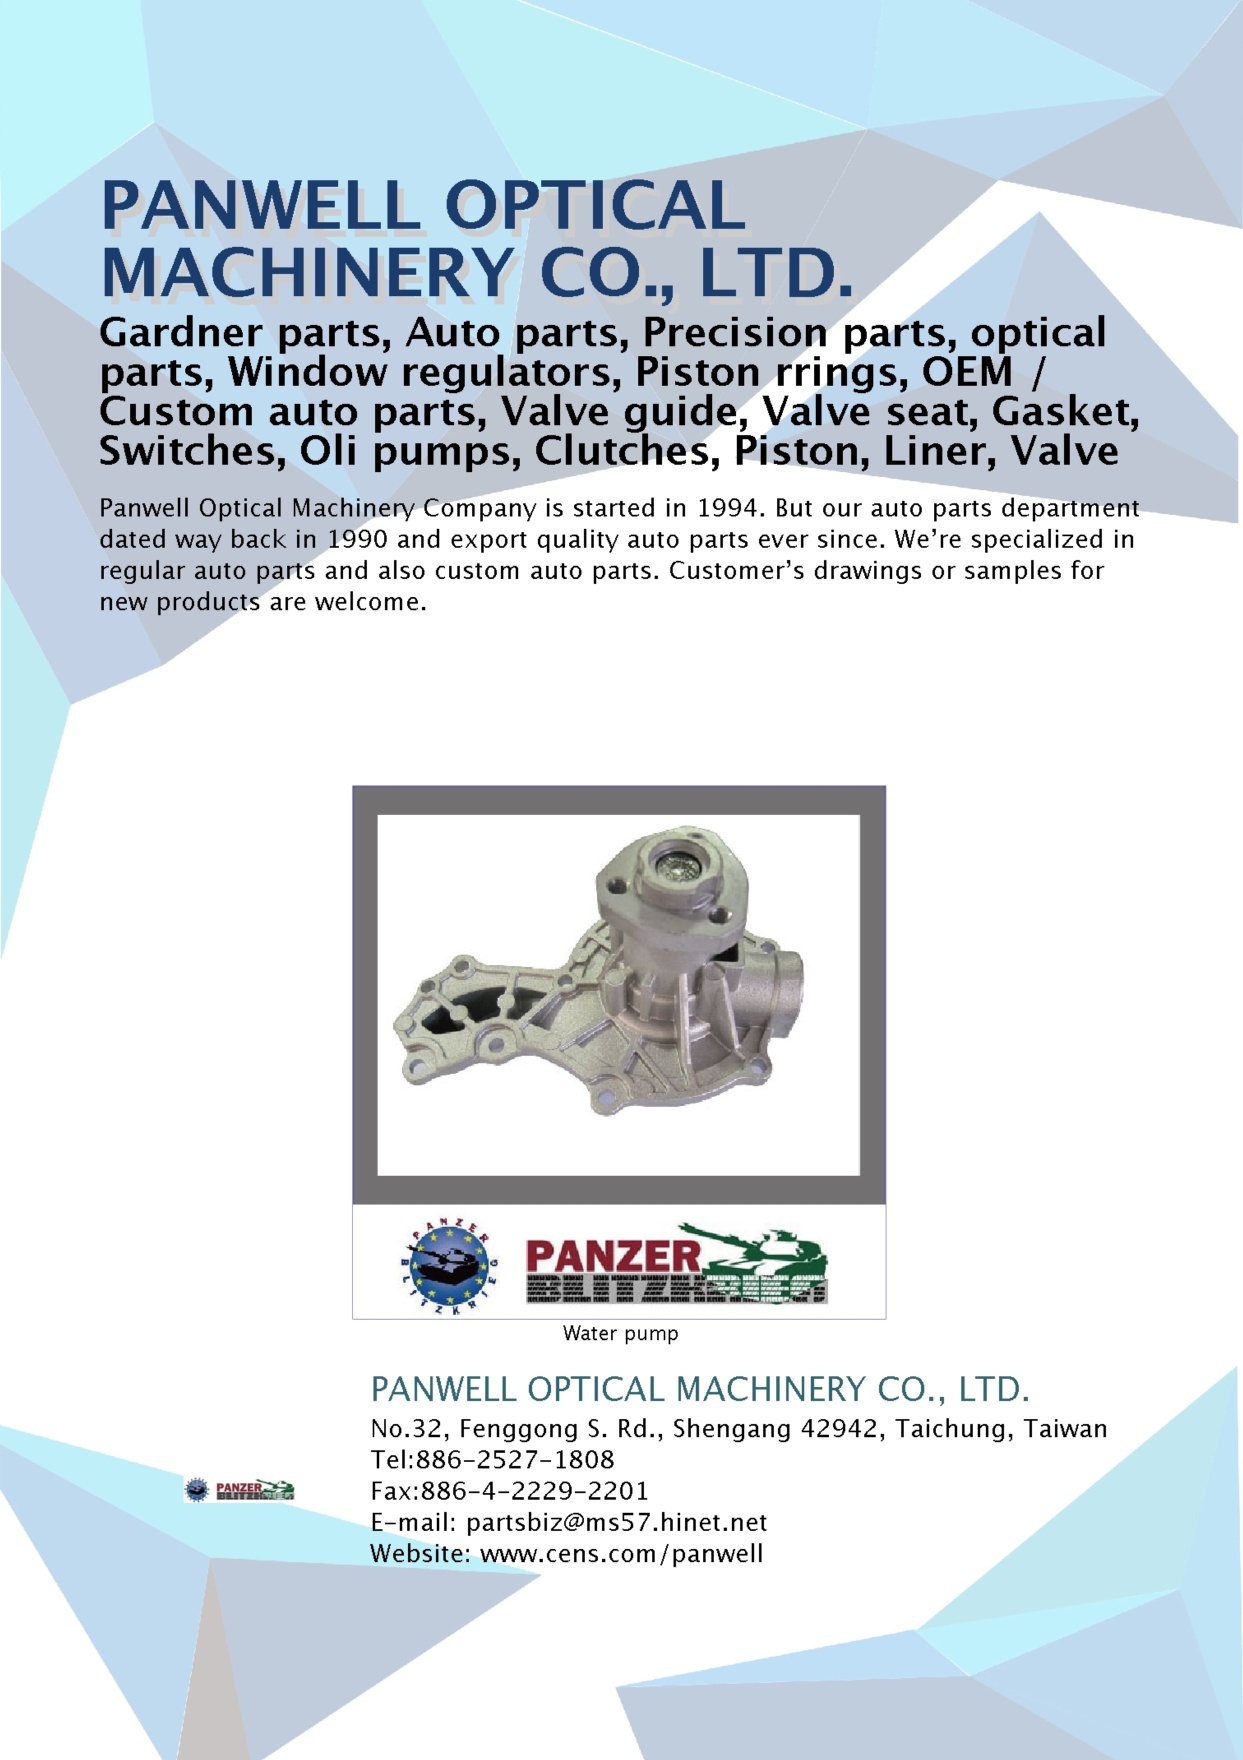 PANWELL OPTICAL MACHINERY CO., LTD.